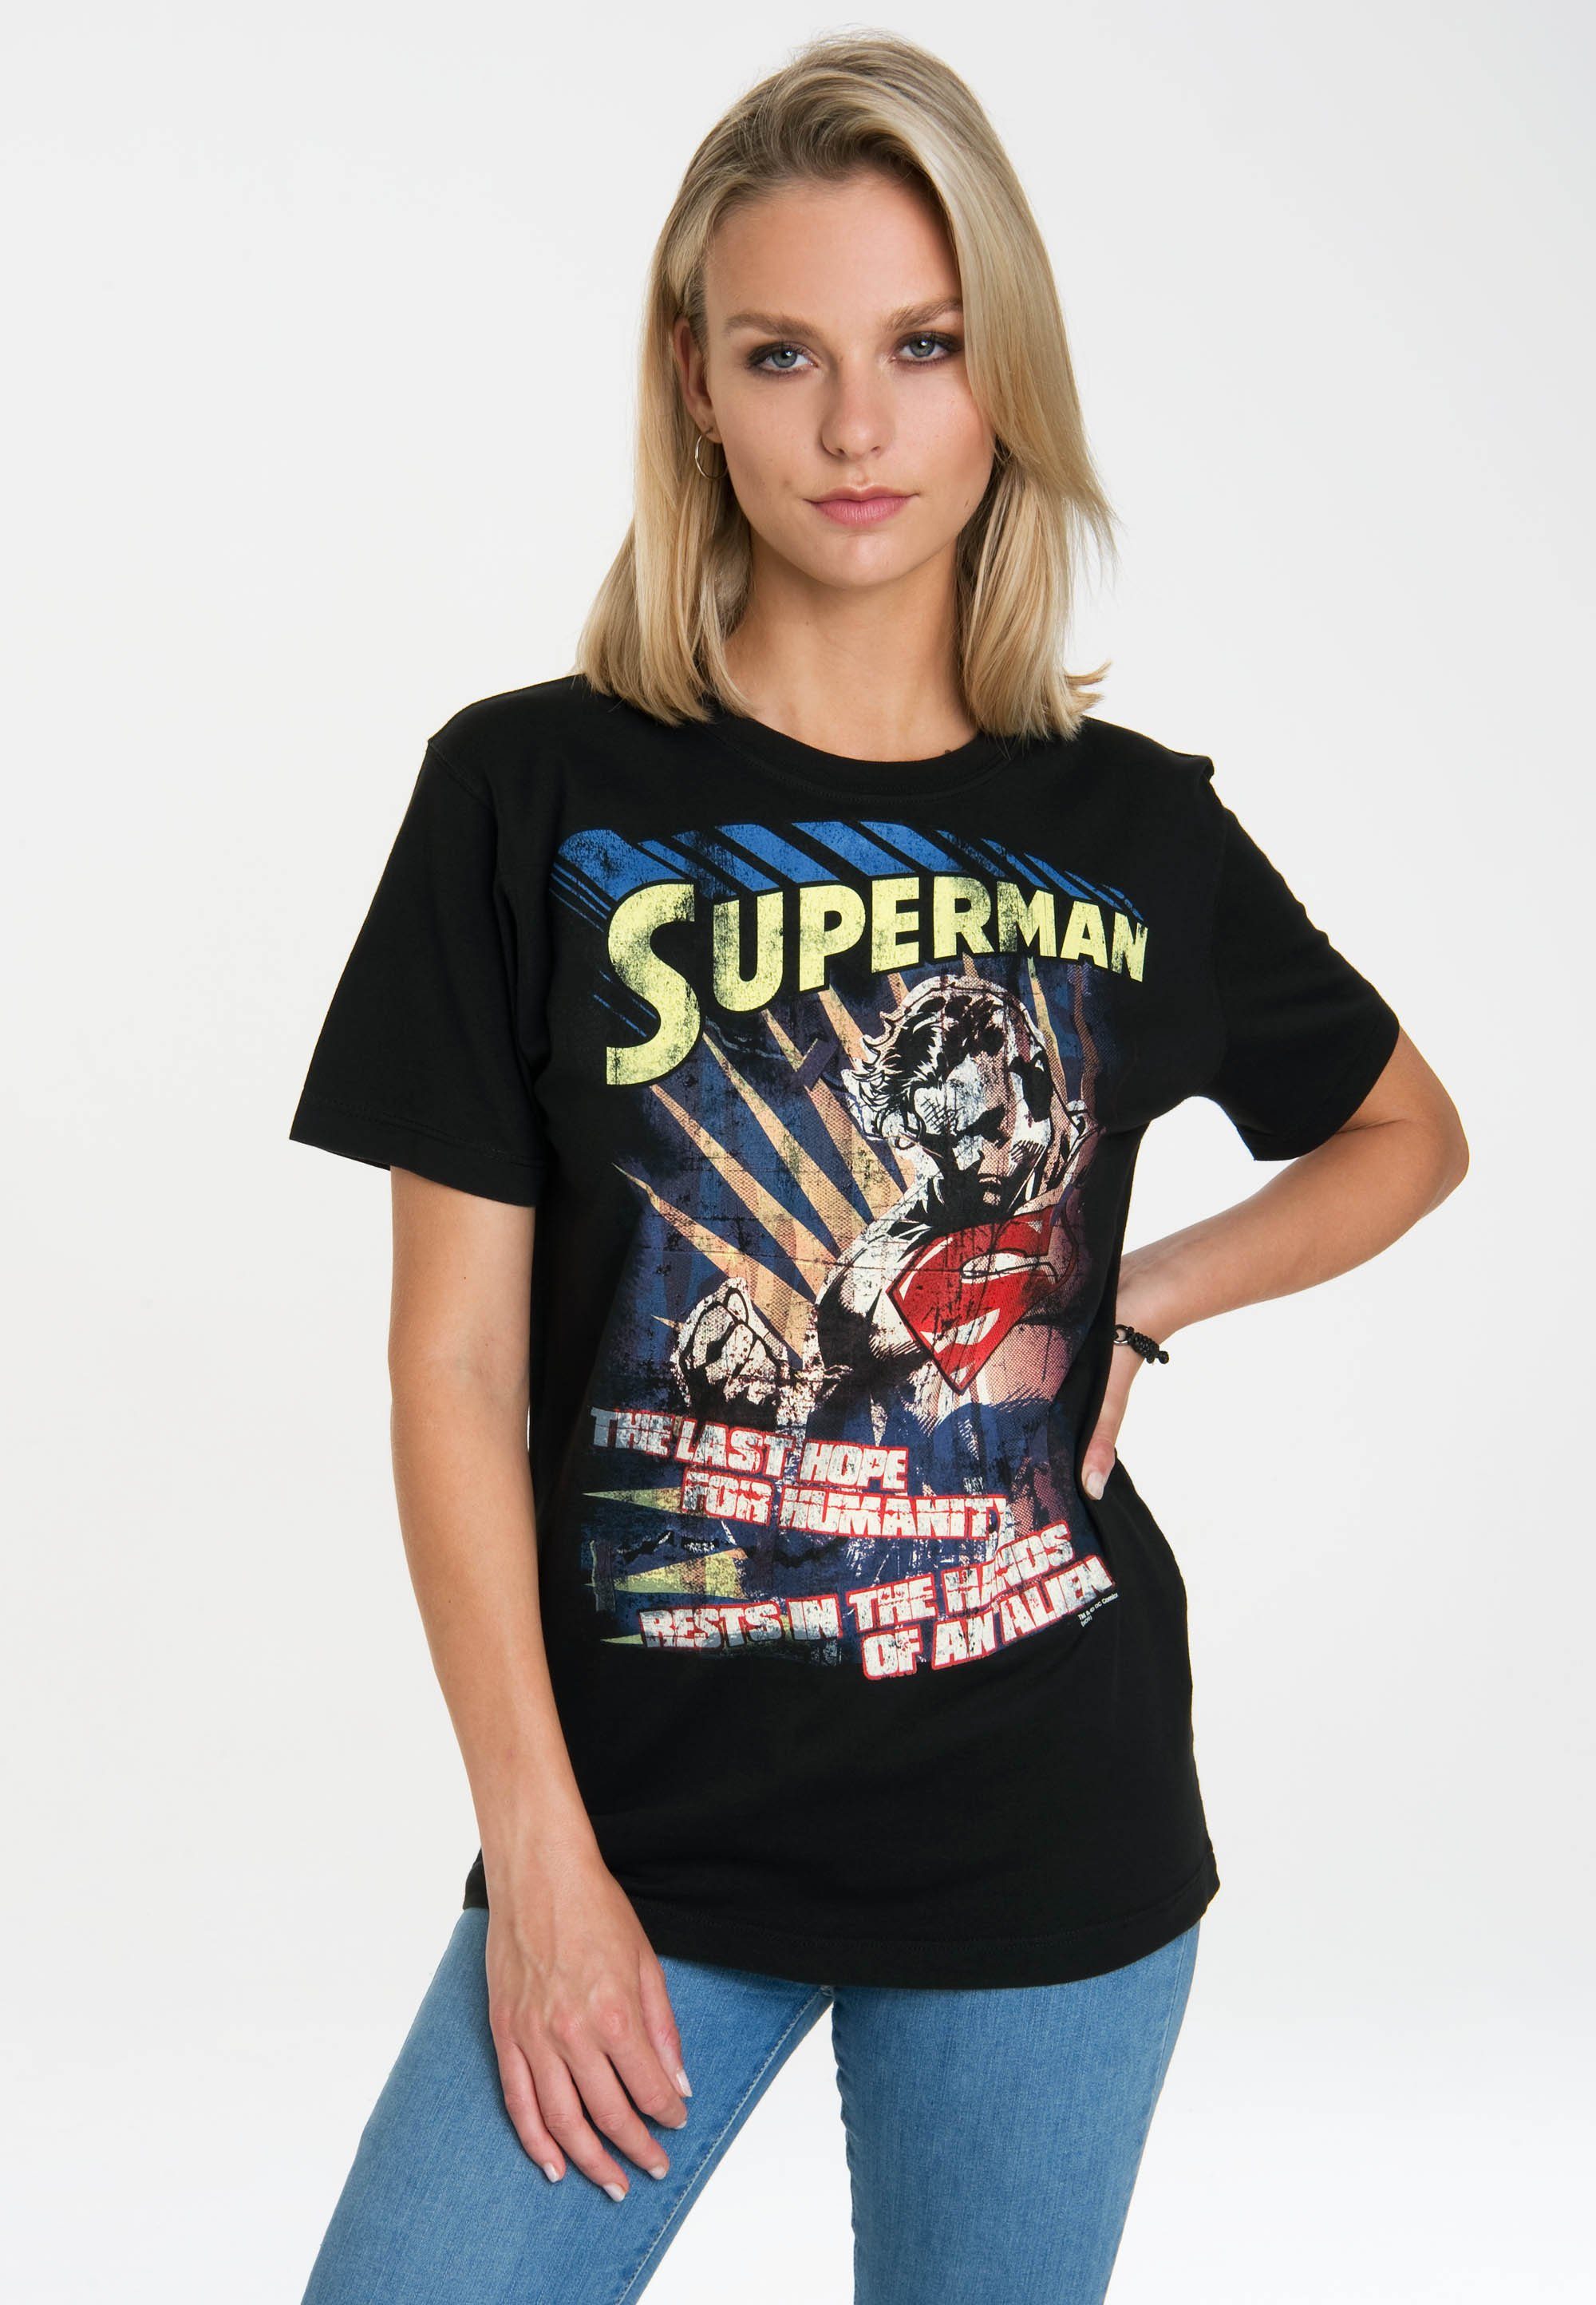 LOGOSHIRT T-Shirt Superman Originaldesign, Last lizenziertem Hope The - geradem Rundhals-Ausschnitt mit klassischem mit In Schnitt